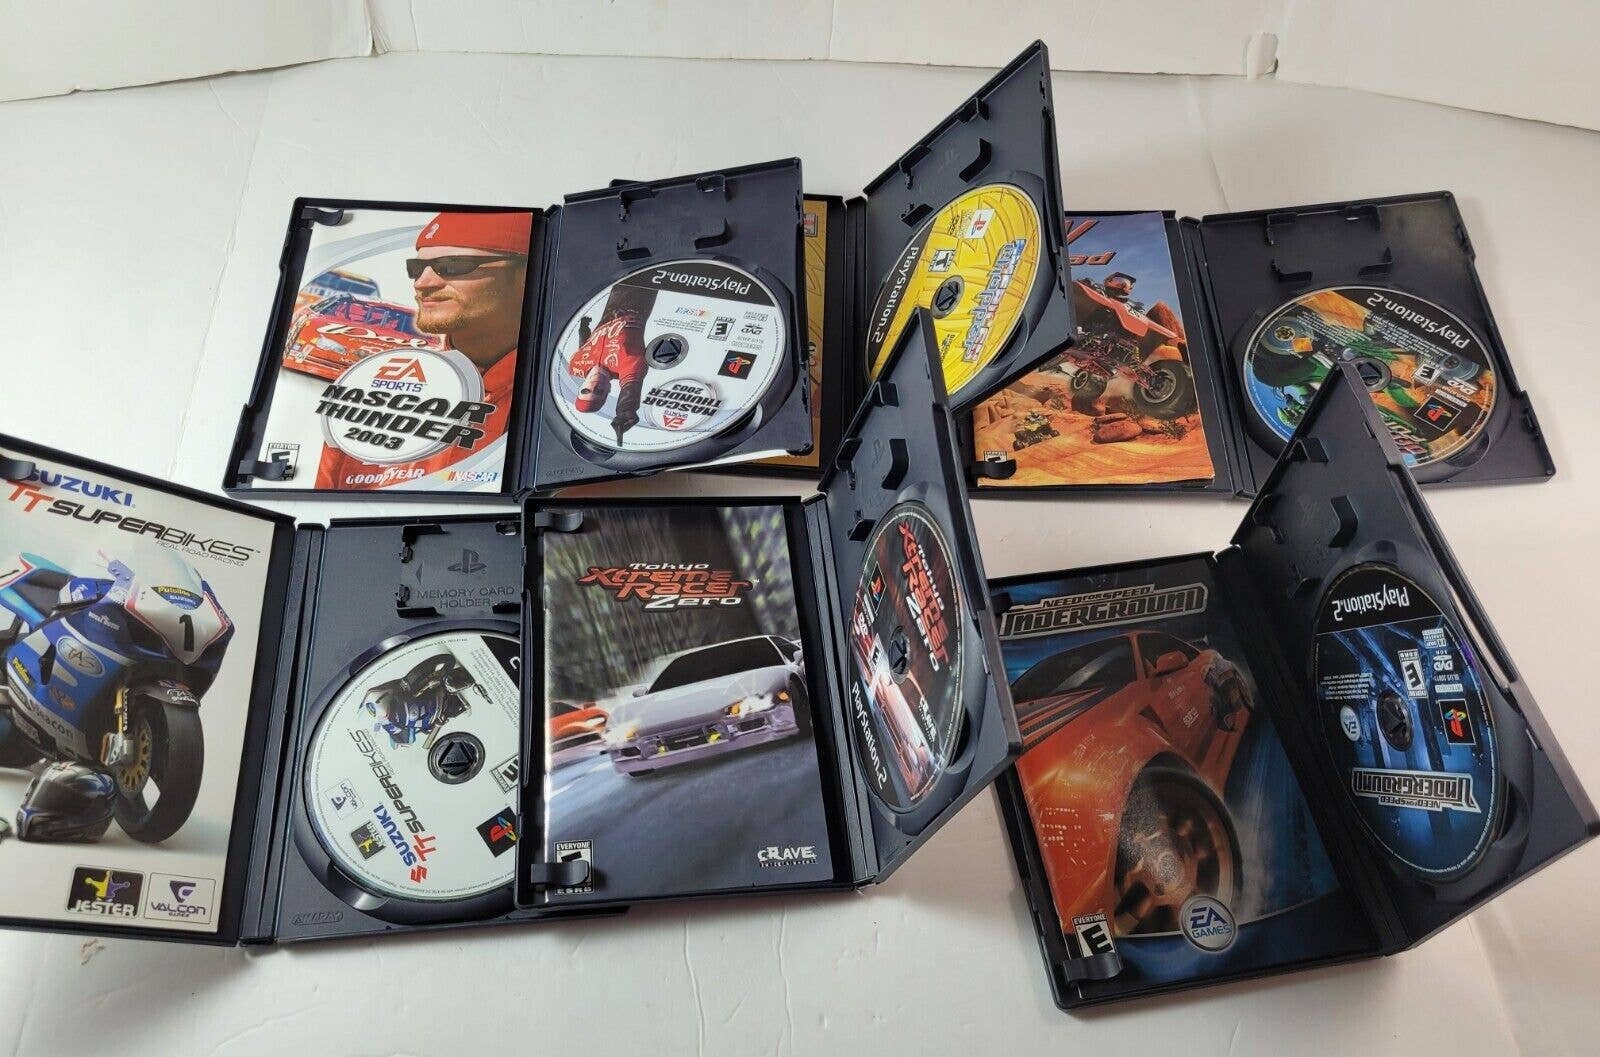 Usado: Jogo Cars - PS2 em Promoção na Americanas